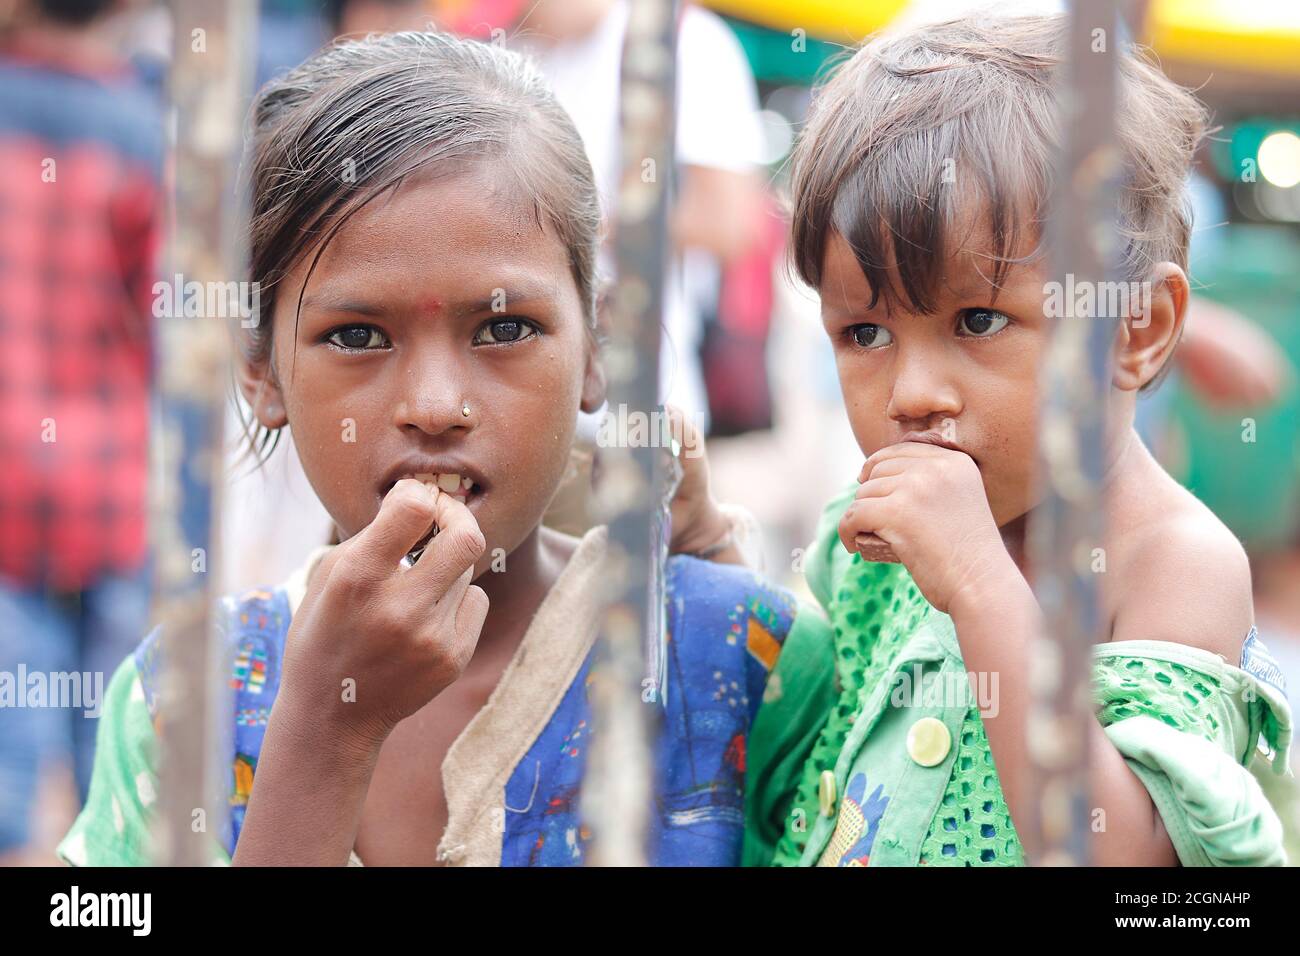 Ahemdabad, Gujarat, India - 20 de junio de 2019: Pobre india desamparada niña de la calle sosteniendo a un pequeño niño en la mano mira la cámara, buscando ayuda, la pobreza concepta Foto de stock